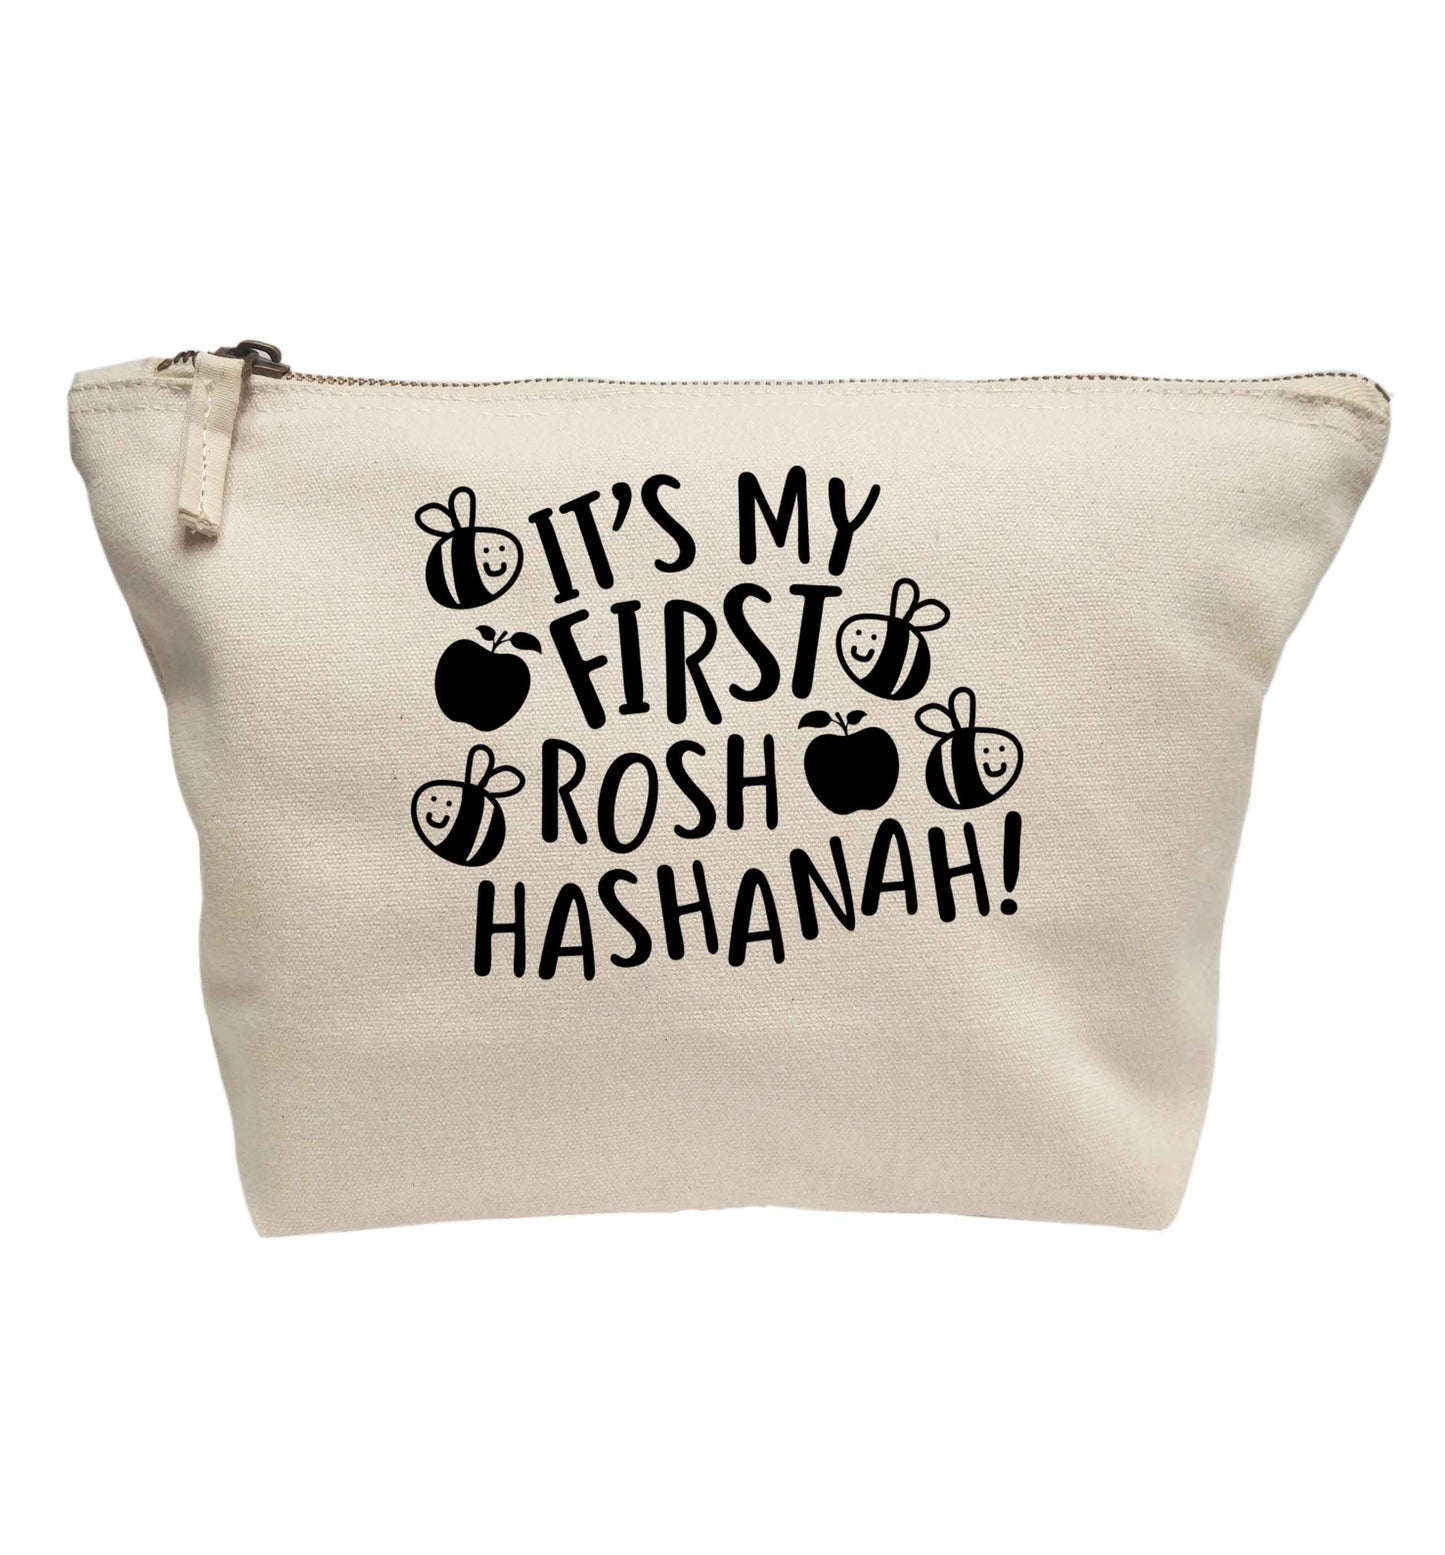 Its my first rosh hashanah | makeup / wash bag